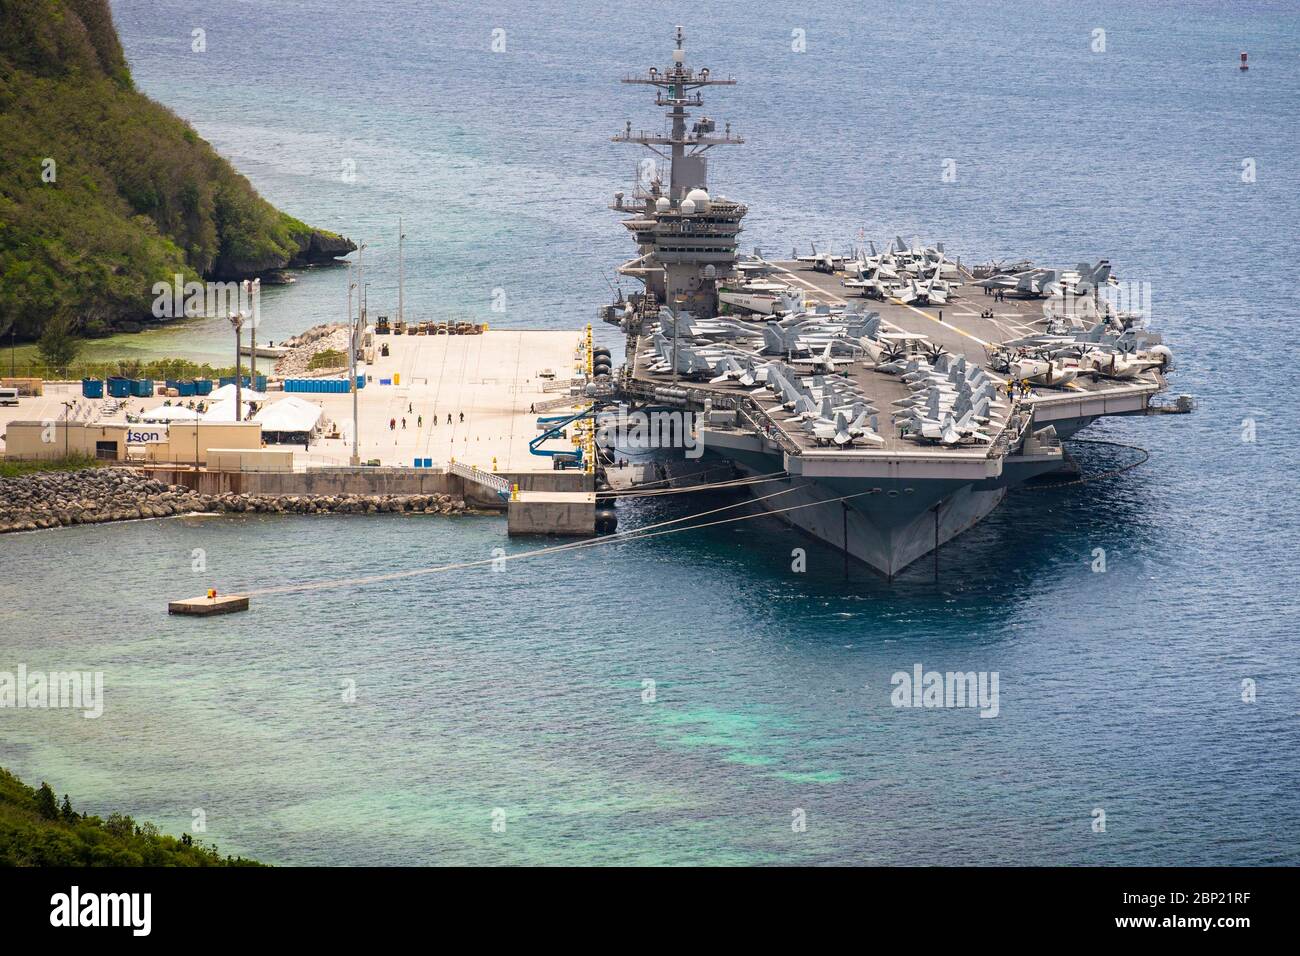 La portaerei della marina statunitense di classe Nimitz USS Theodore Roosevelt ormeggiata sul lato del molo alla base navale Guam 15 maggio 2020 ad Apra Harbour, Guam. L'equipaggio negativo del COVID è tornato dalla quarantena e si prepara a tornare in mare per continuare il loro dispiegamento programmato nell'Indo-Pacifico. Foto Stock